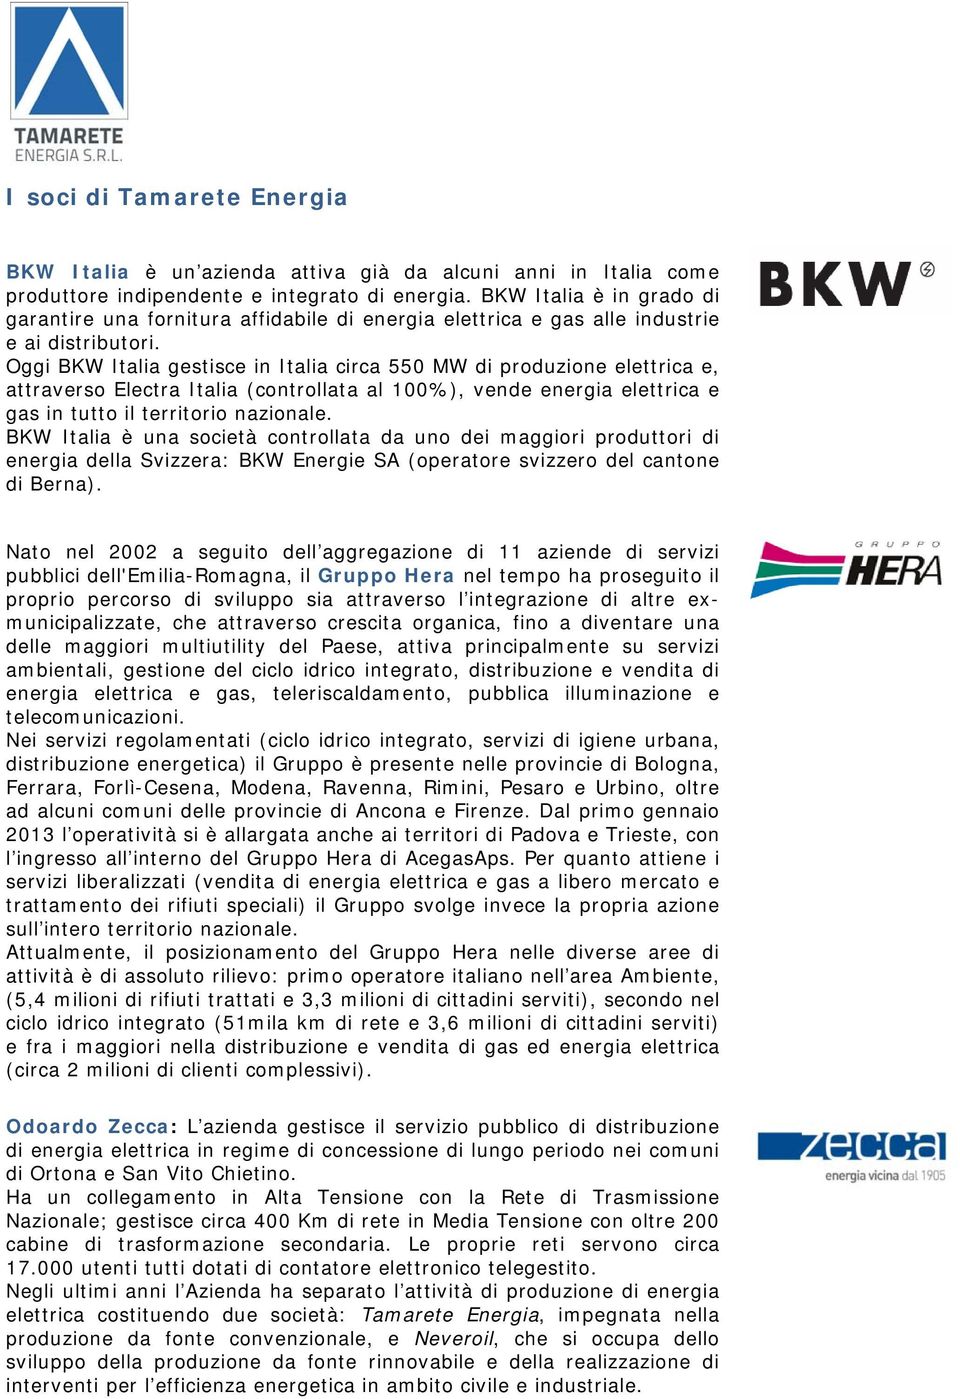 Oggi BKW Italia gestisce in Italia circa 550 MW di produzione elettrica e, attraverso Electra Italia (controllata al 100%), vende energia elettrica e gas in tutto il territorio nazionale.